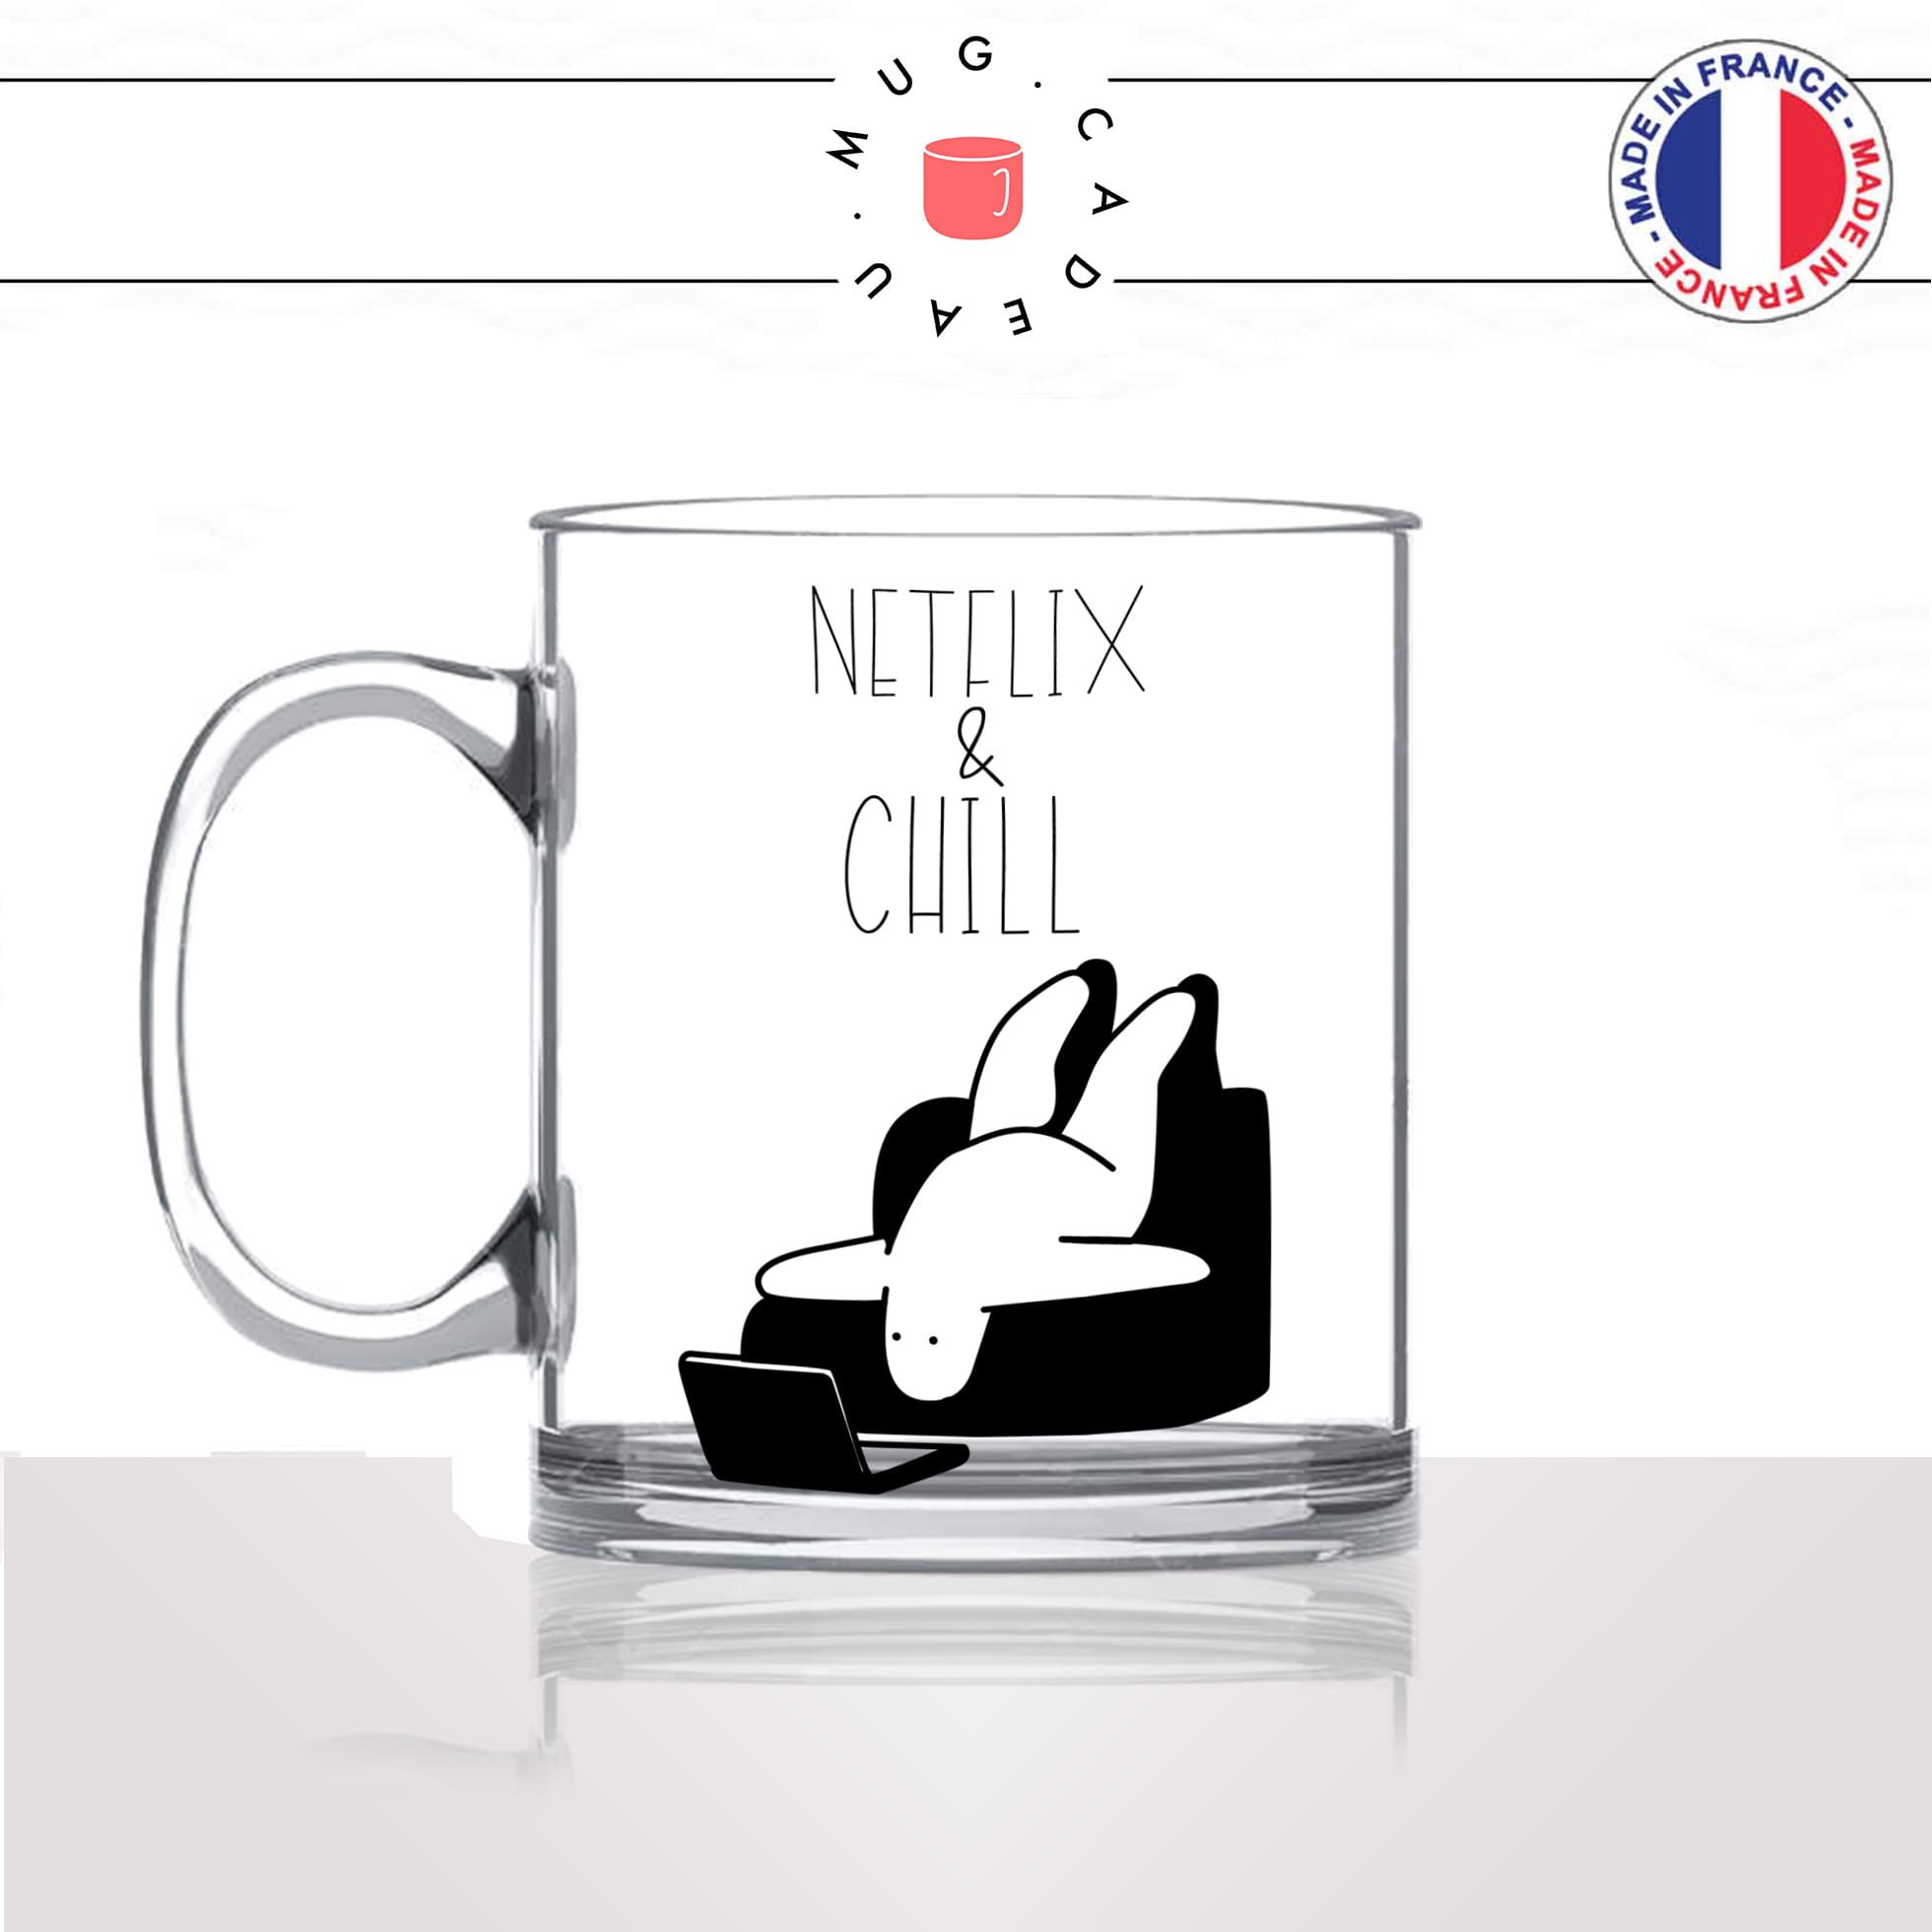 mug-tasse-en-verre-transparent-glass-netflix-and-chiill-canapé-serie-film-humour-confinement-idée-cadeau-fun-cool-café-thé